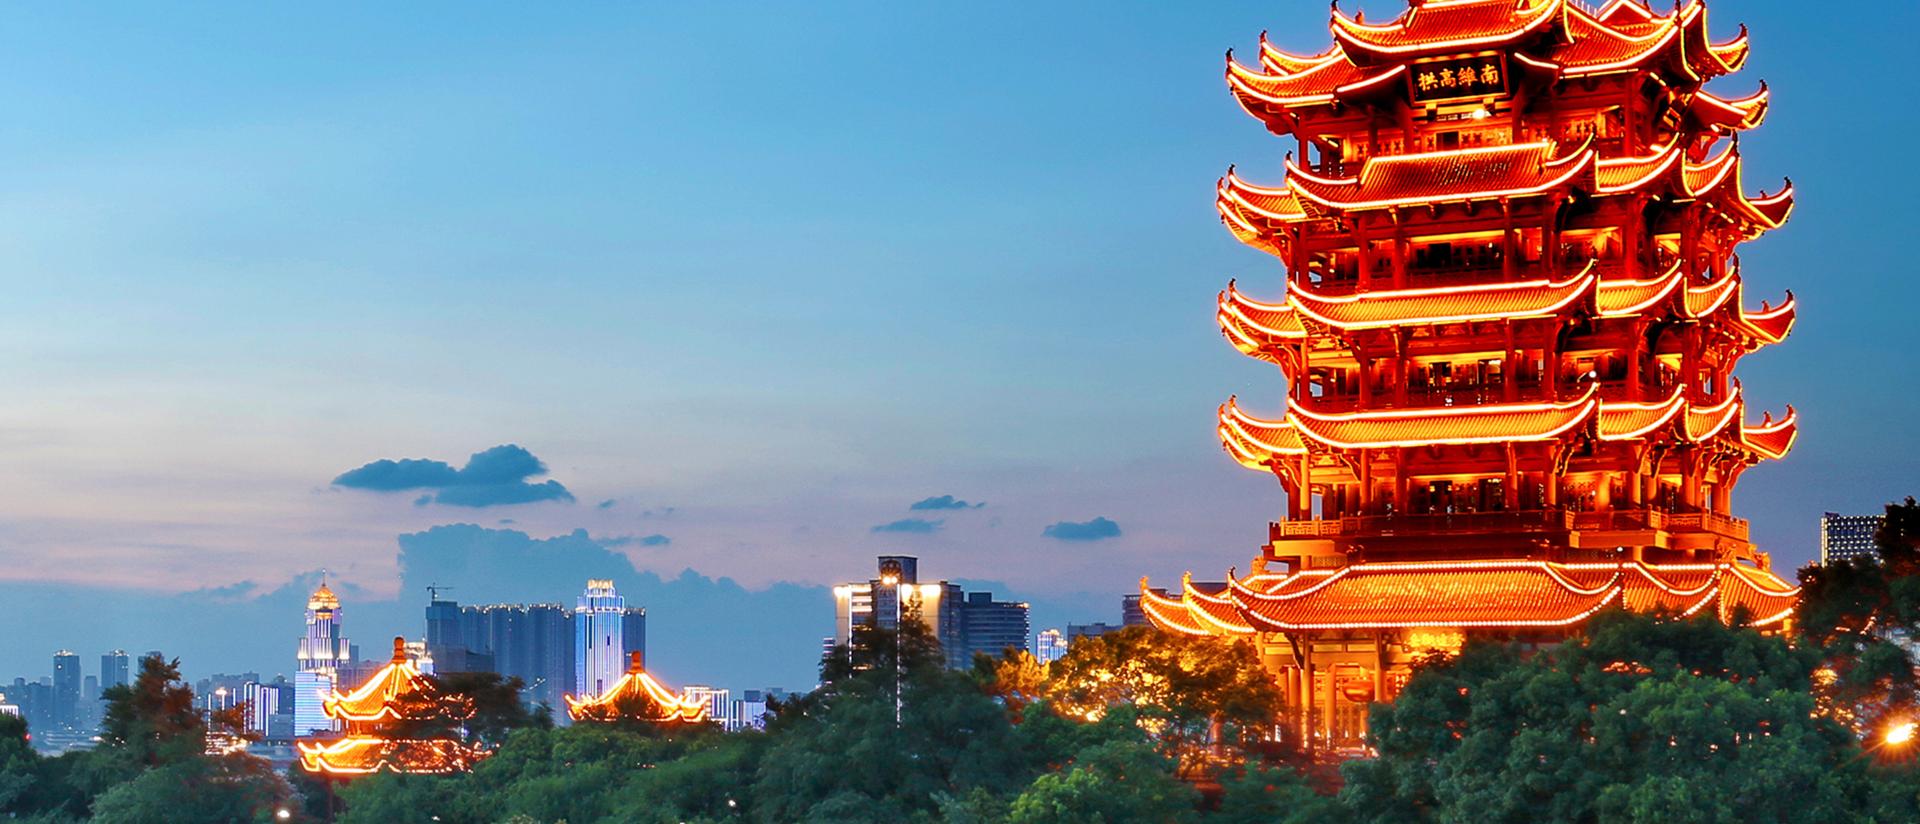 这是一张展示古典中国塔楼在黄昏时分的照片，塔楼灯光亮起，背景是现代城市天际线和树木。